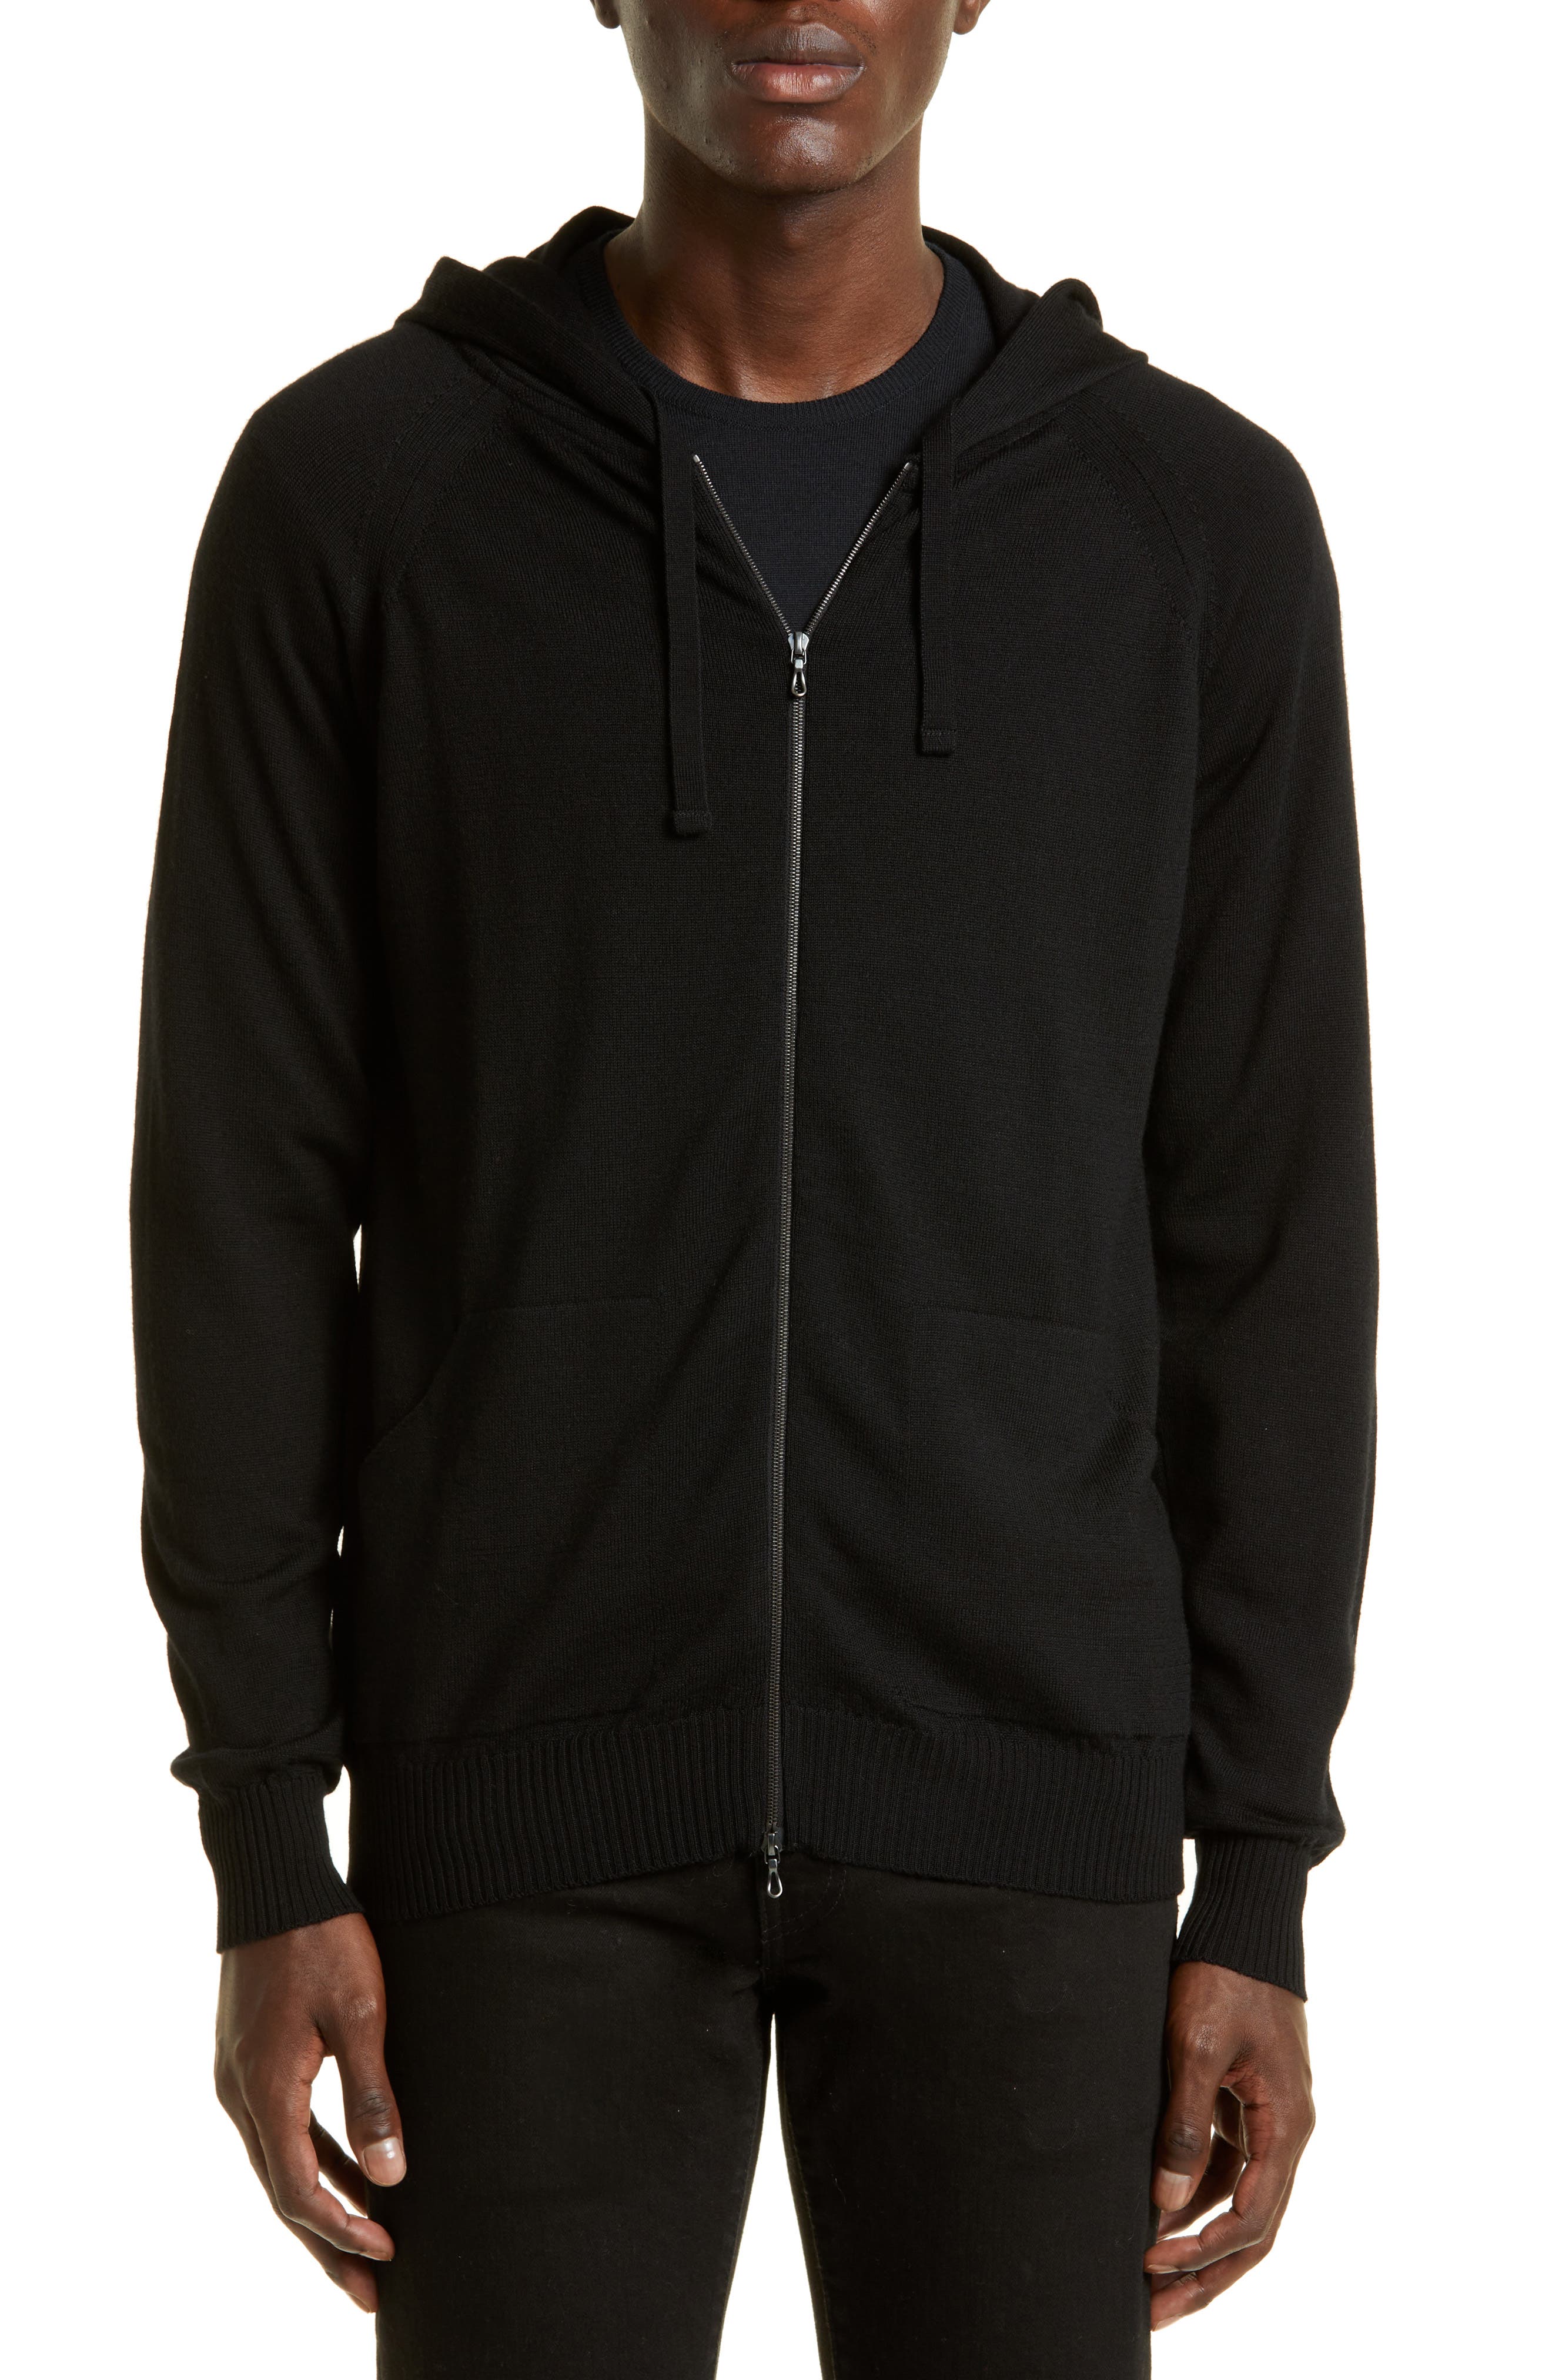 Men's Pullover Jacket Fashion Side Zipper Hoodies Hooded Outwear Sweatshirt Q 